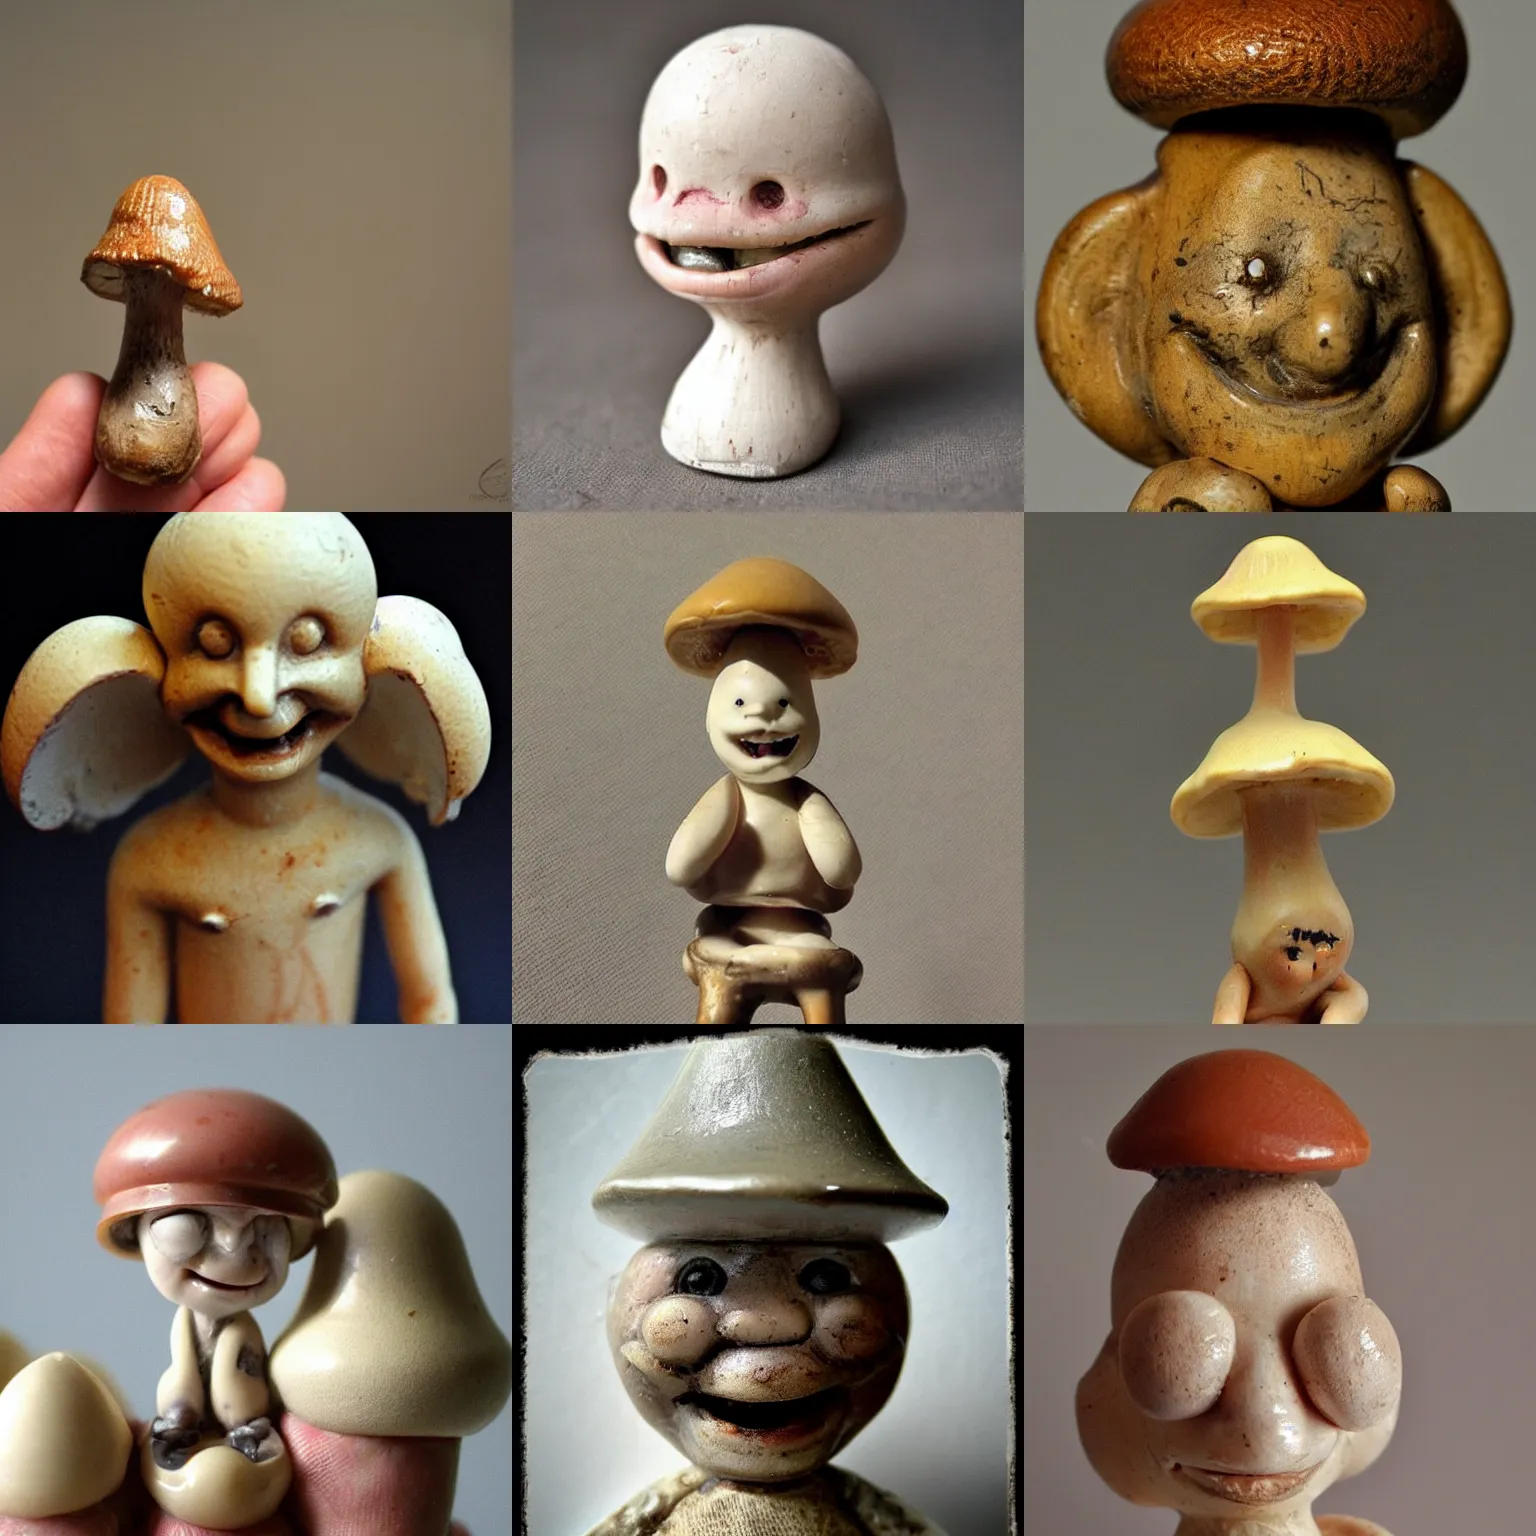 Prompt: anthropomorphic smiling! antique mushroom!!! figurine, disturbing creepy macro photo